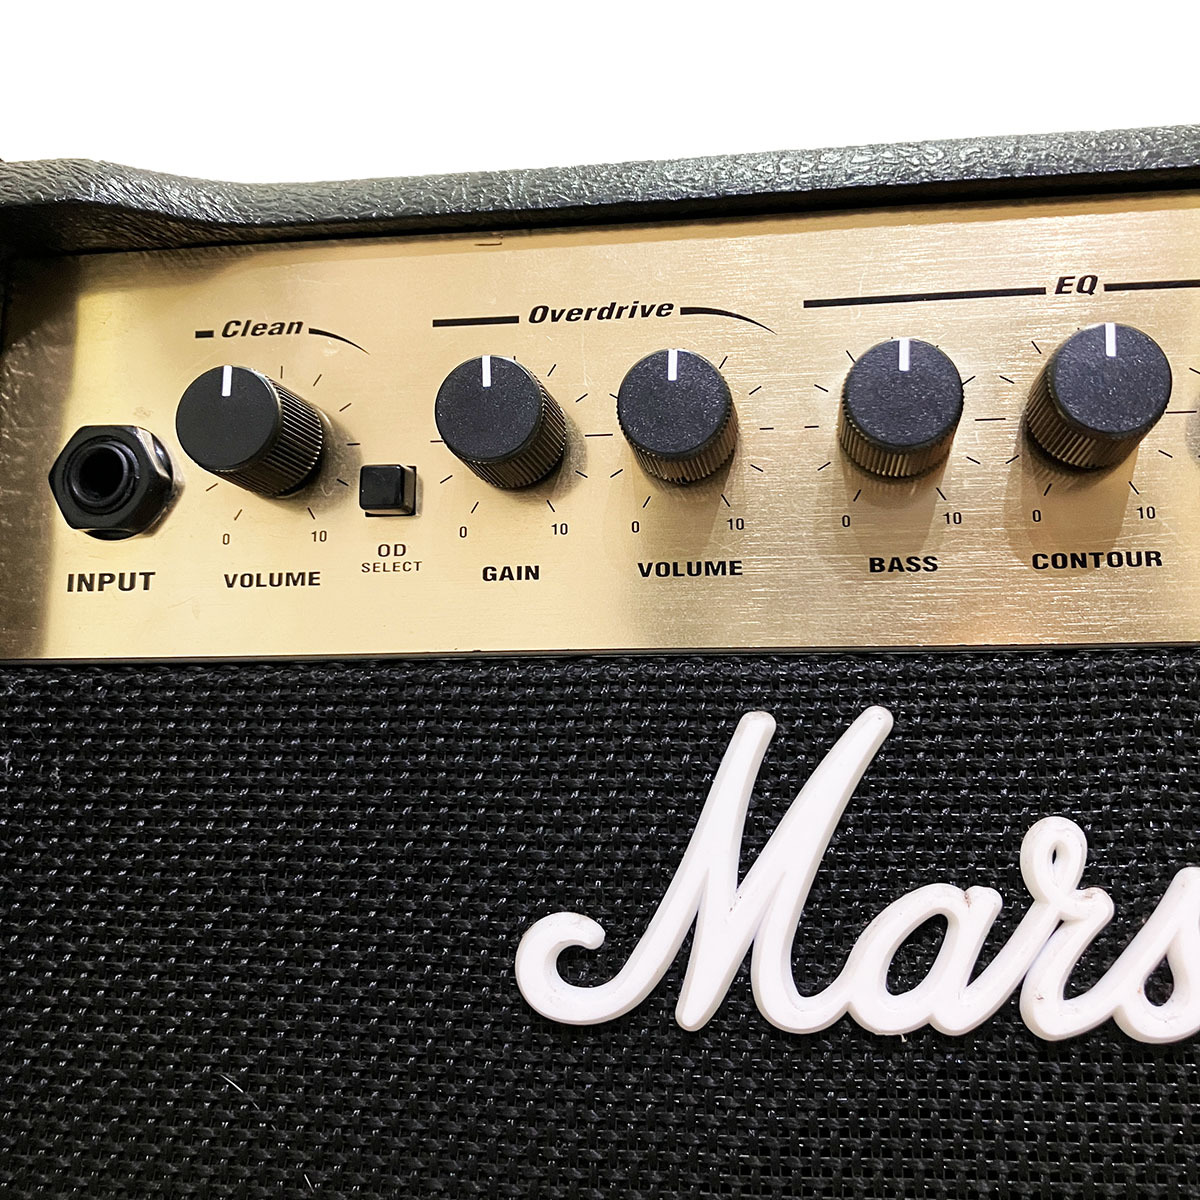 マーシャル ギターアンプ MARSHALL MG15CDR 完動品 正規品 本物 GUITAR